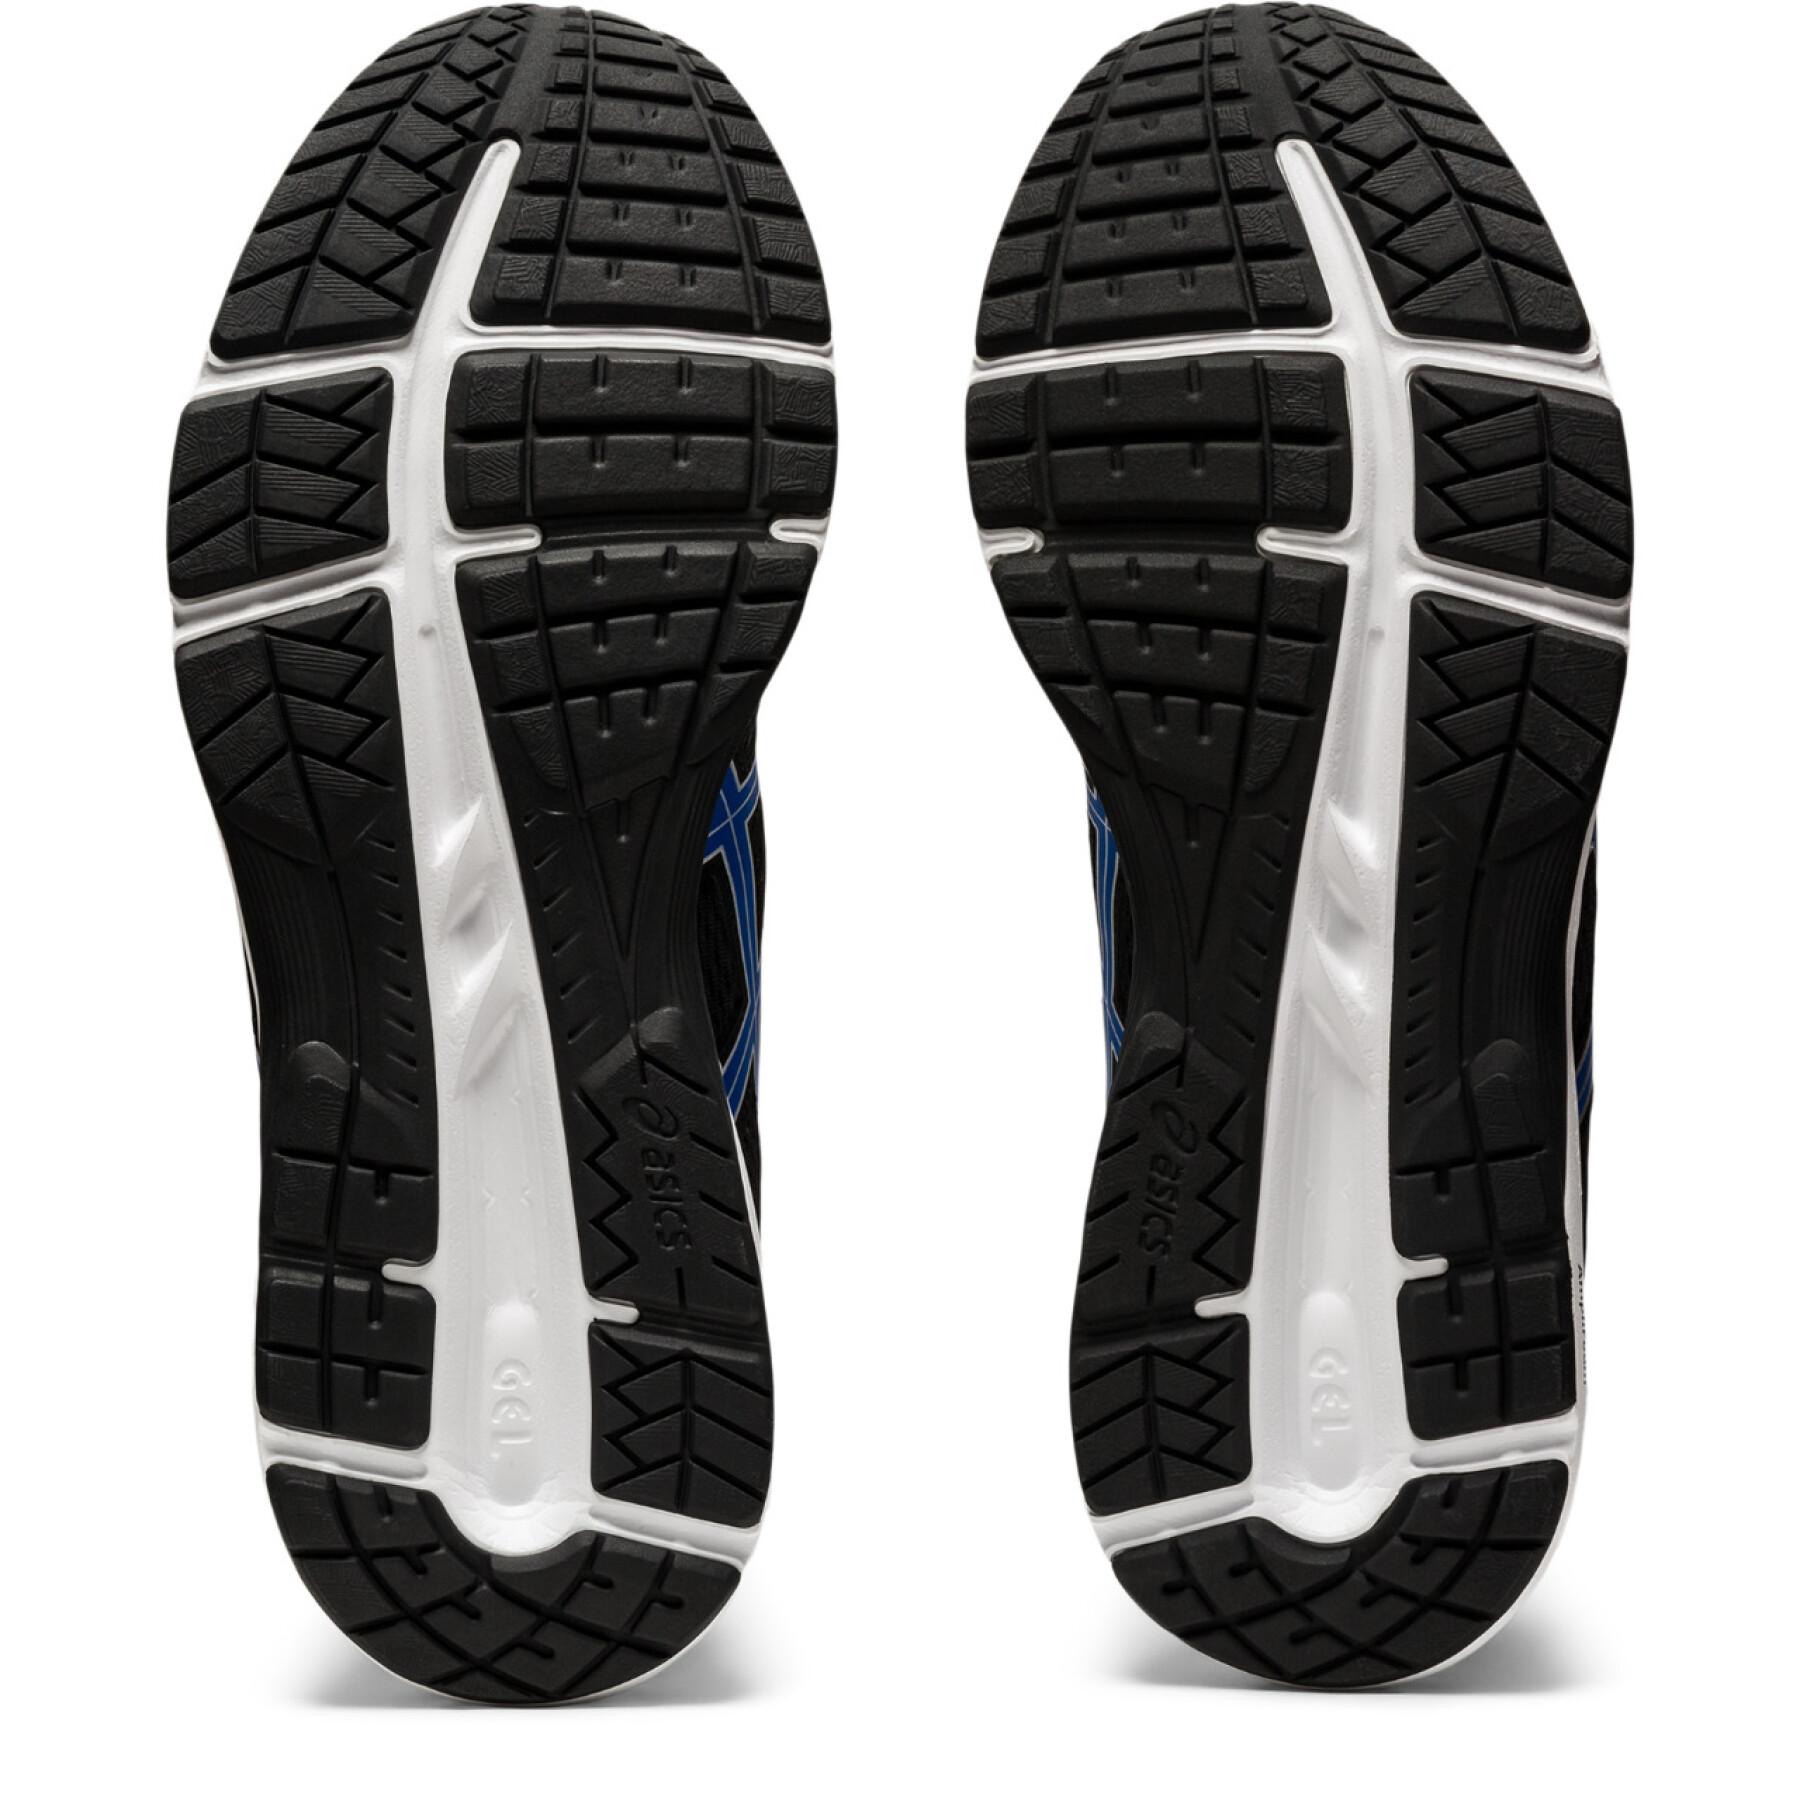 Chaussures de running Asics Gel-Contend 6